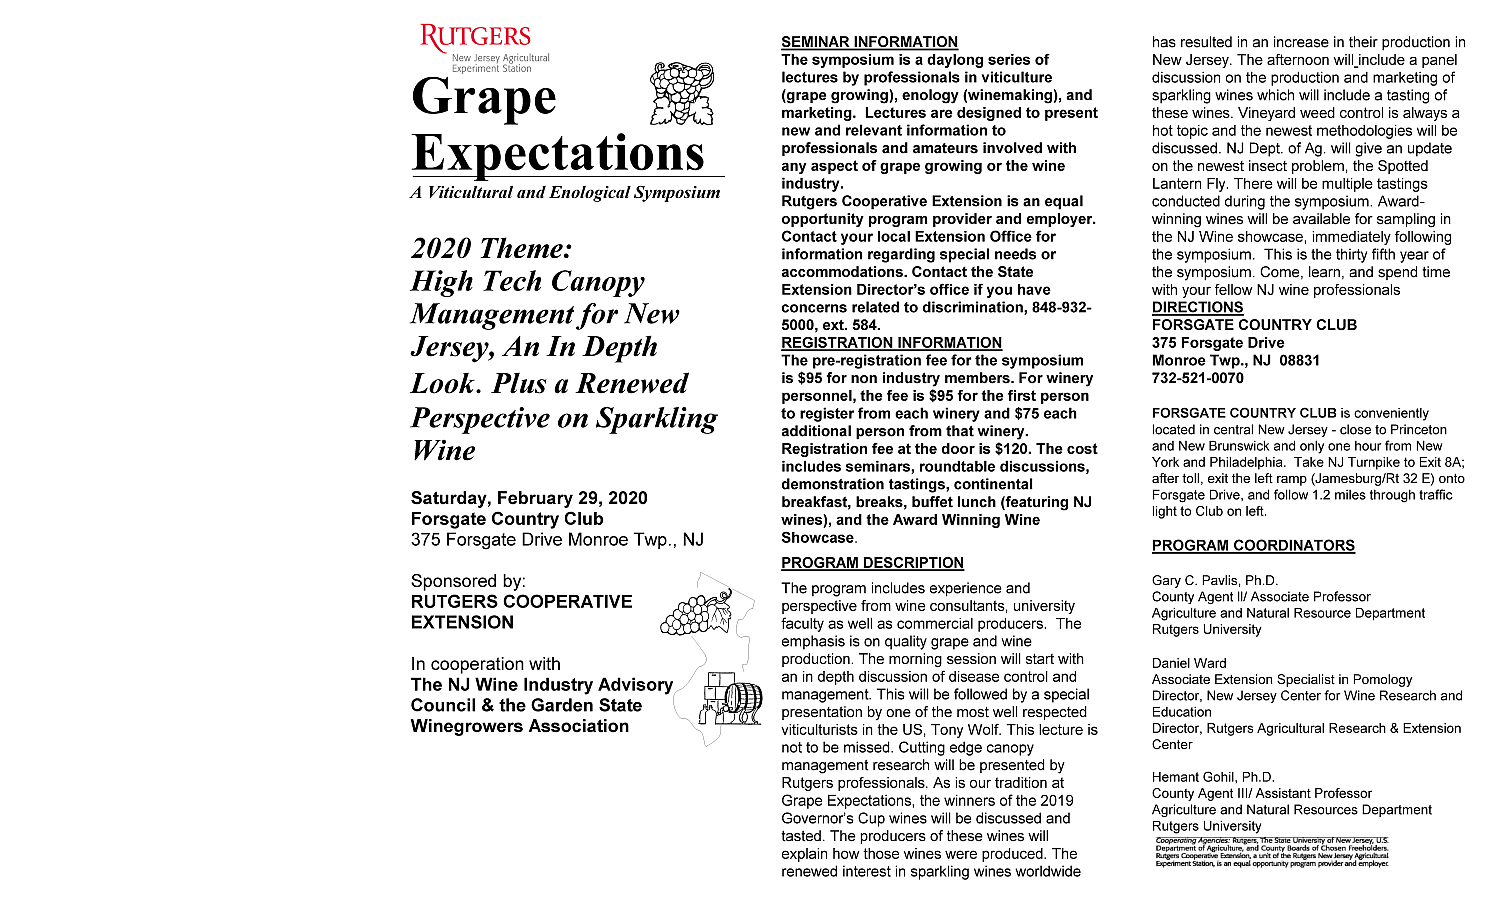 Grape Expectations Symposium 2020 program